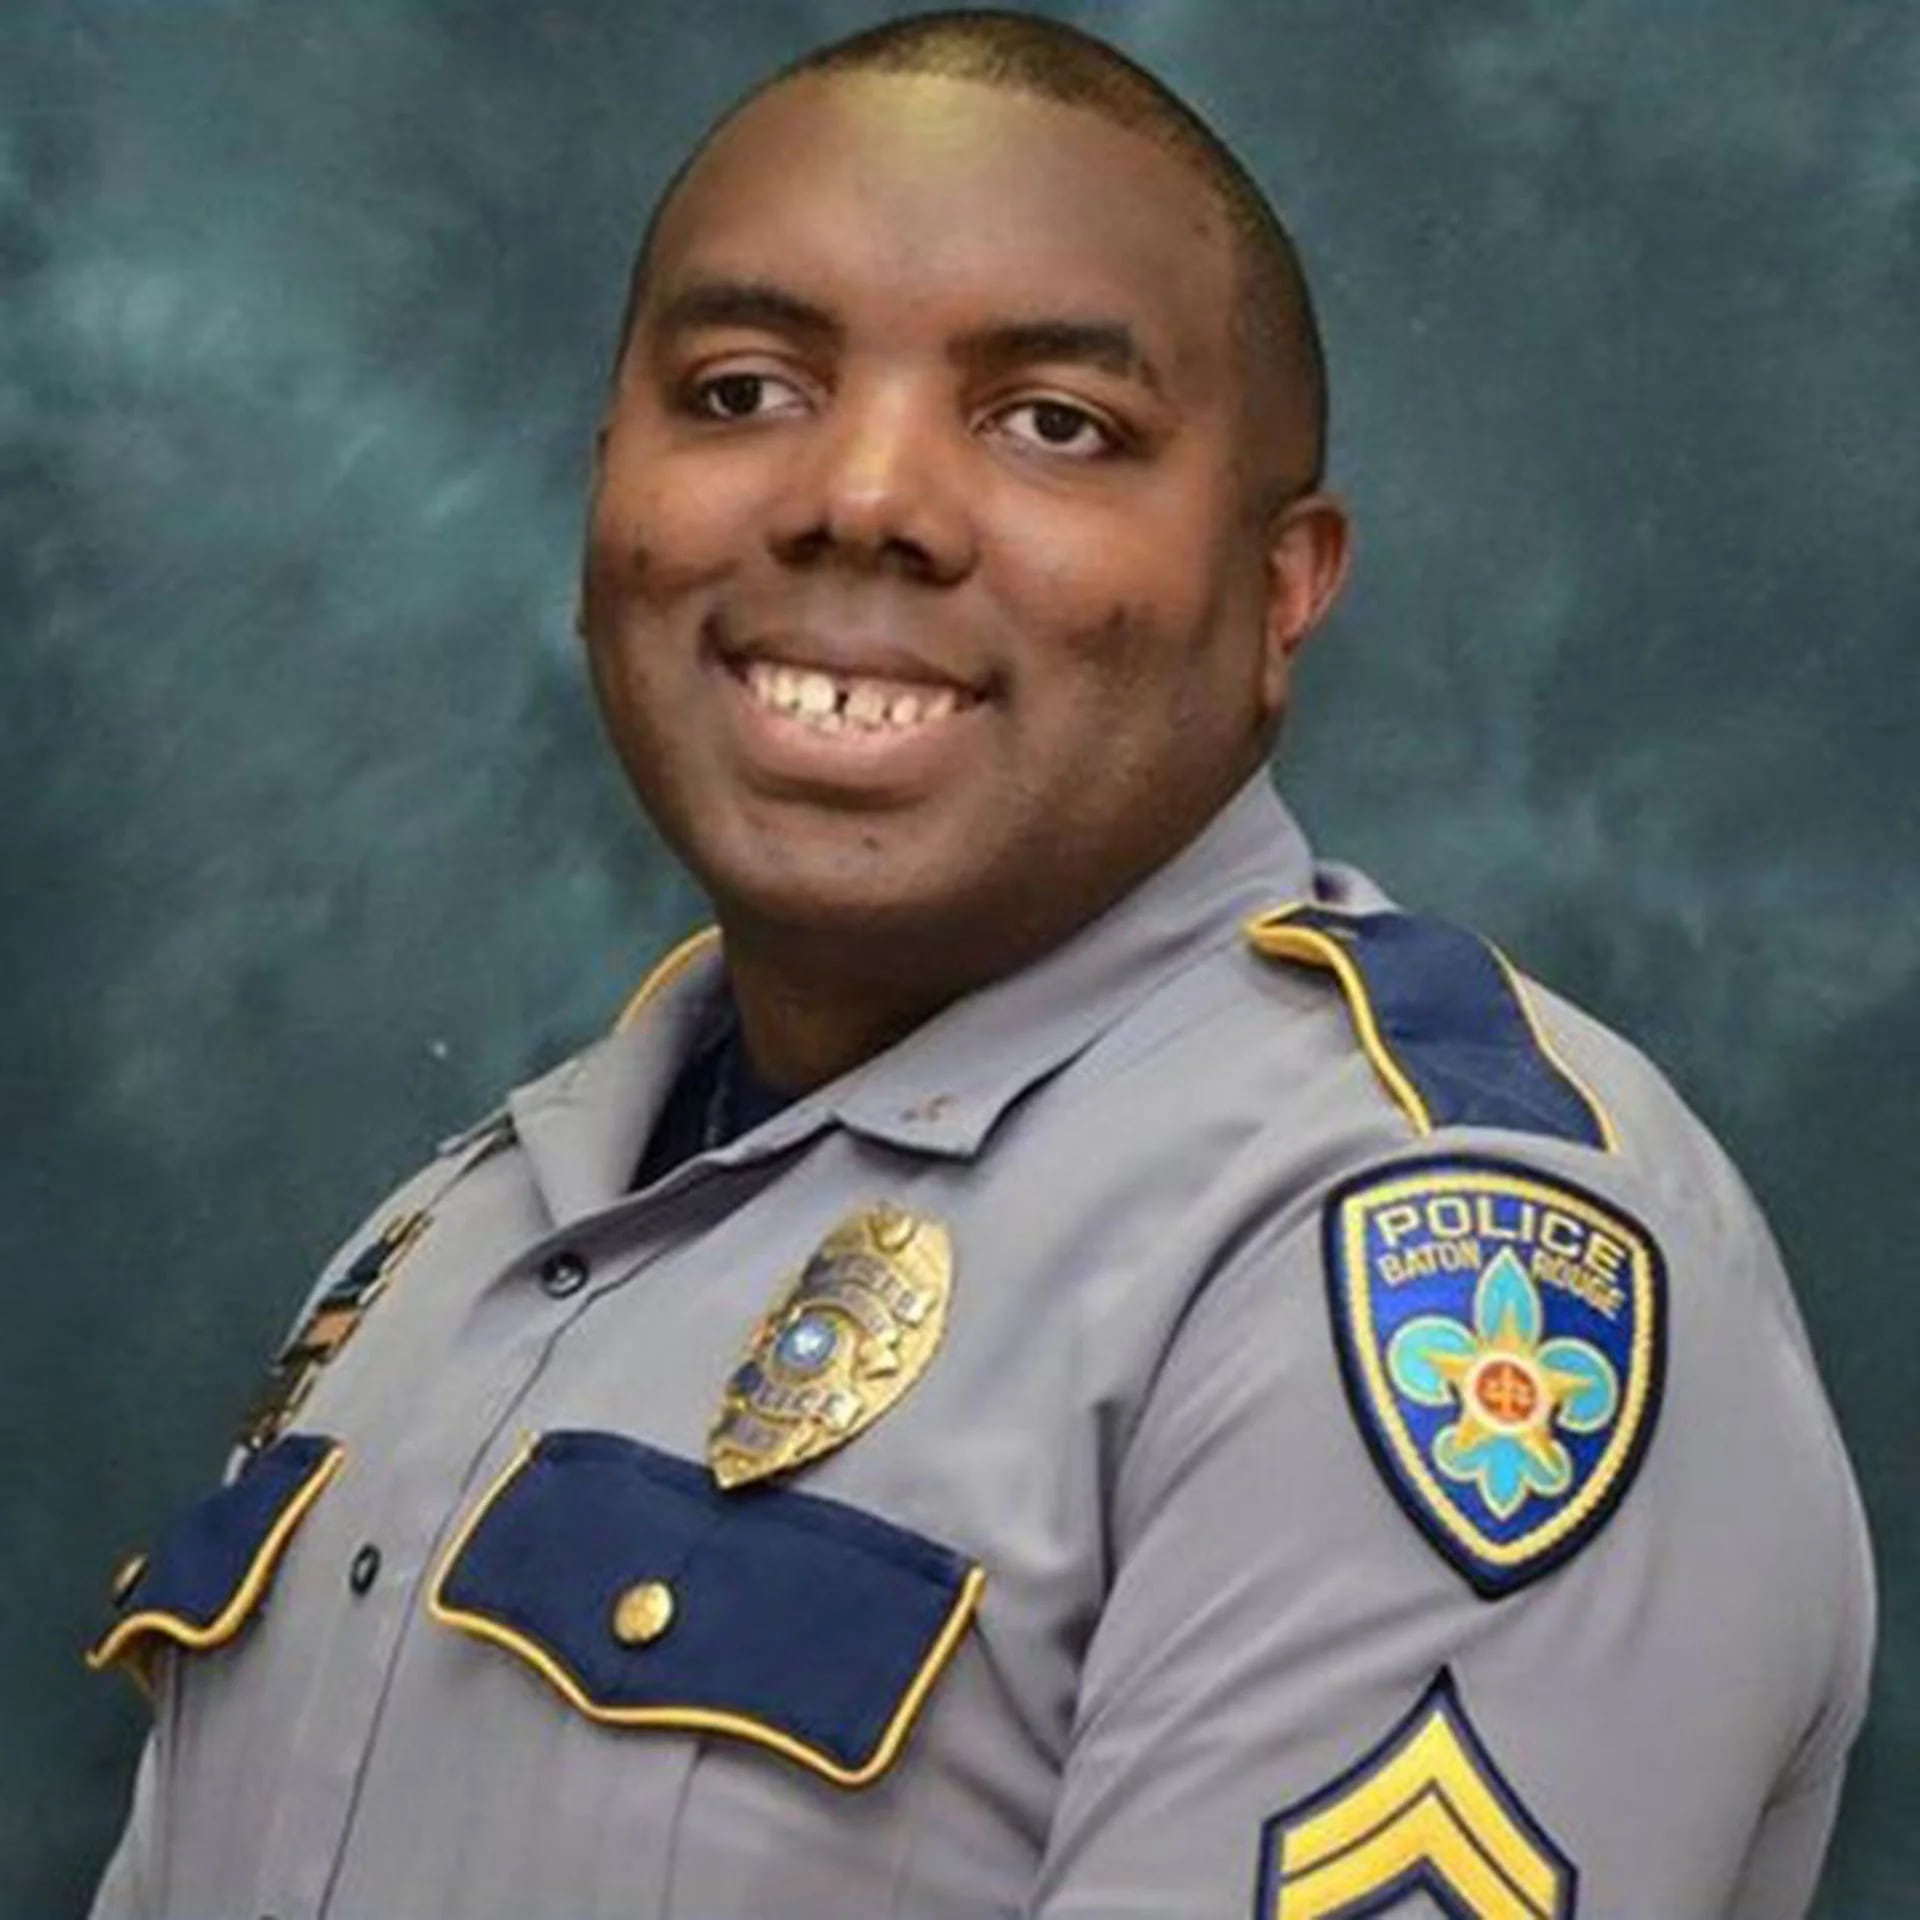 La foto oficial de Montrell Jackson dentro del Departamento de Policía de Baton Rouge.